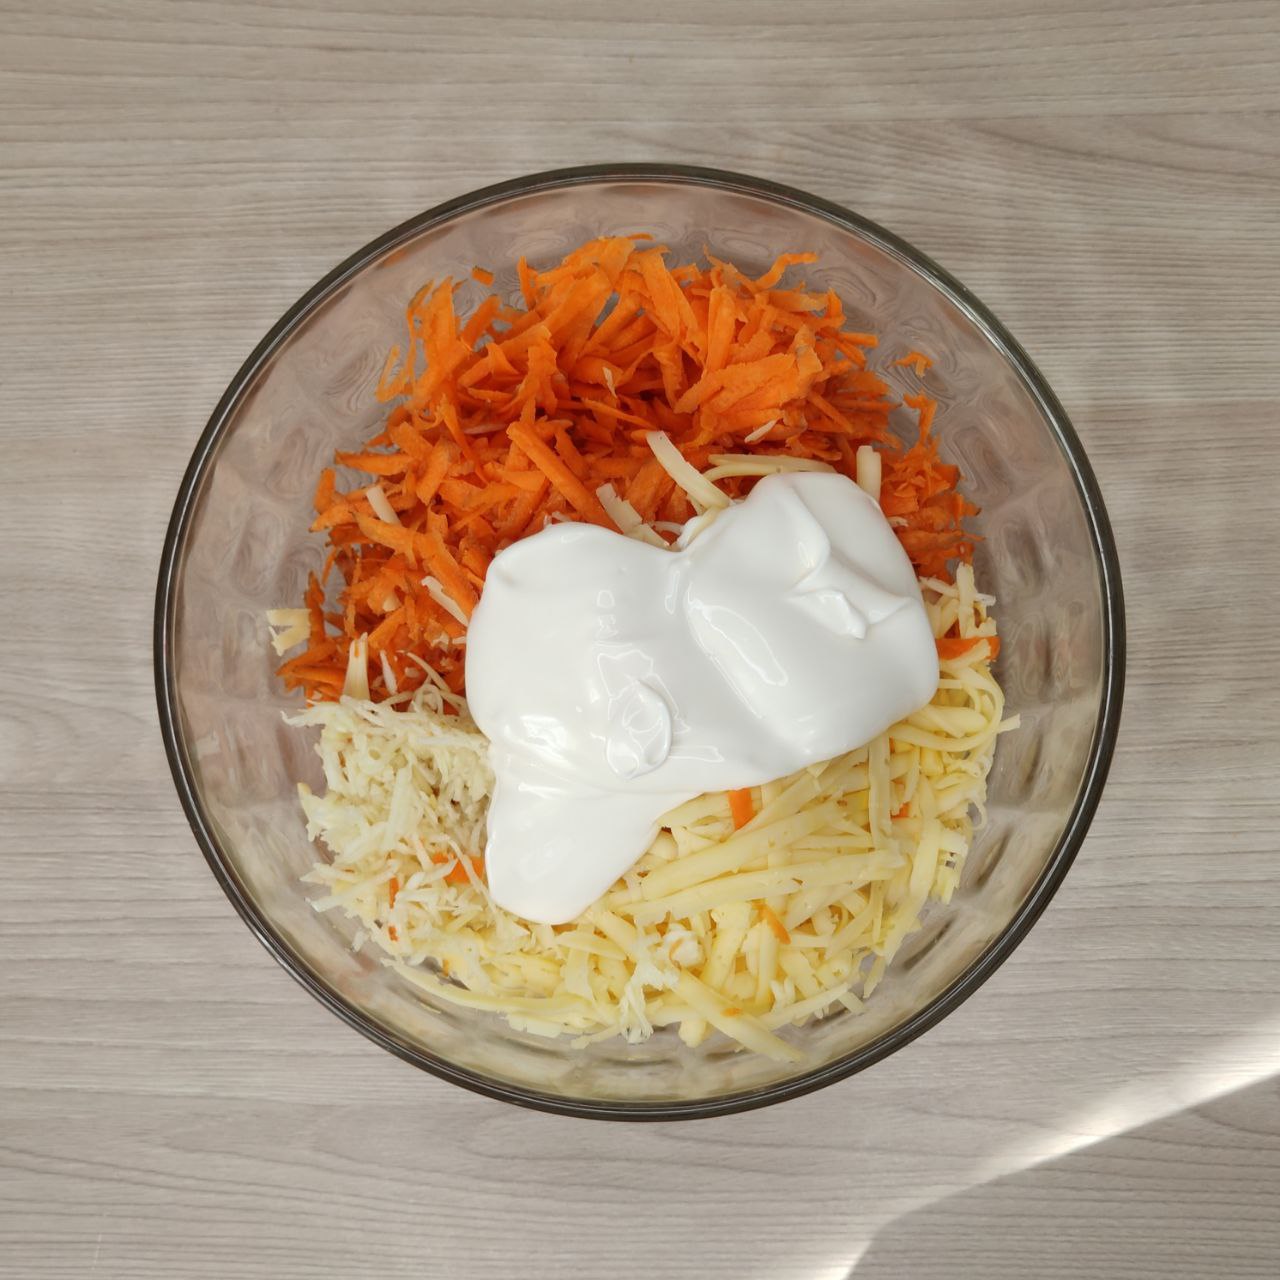 Салат из моркови с сыром и чесноком